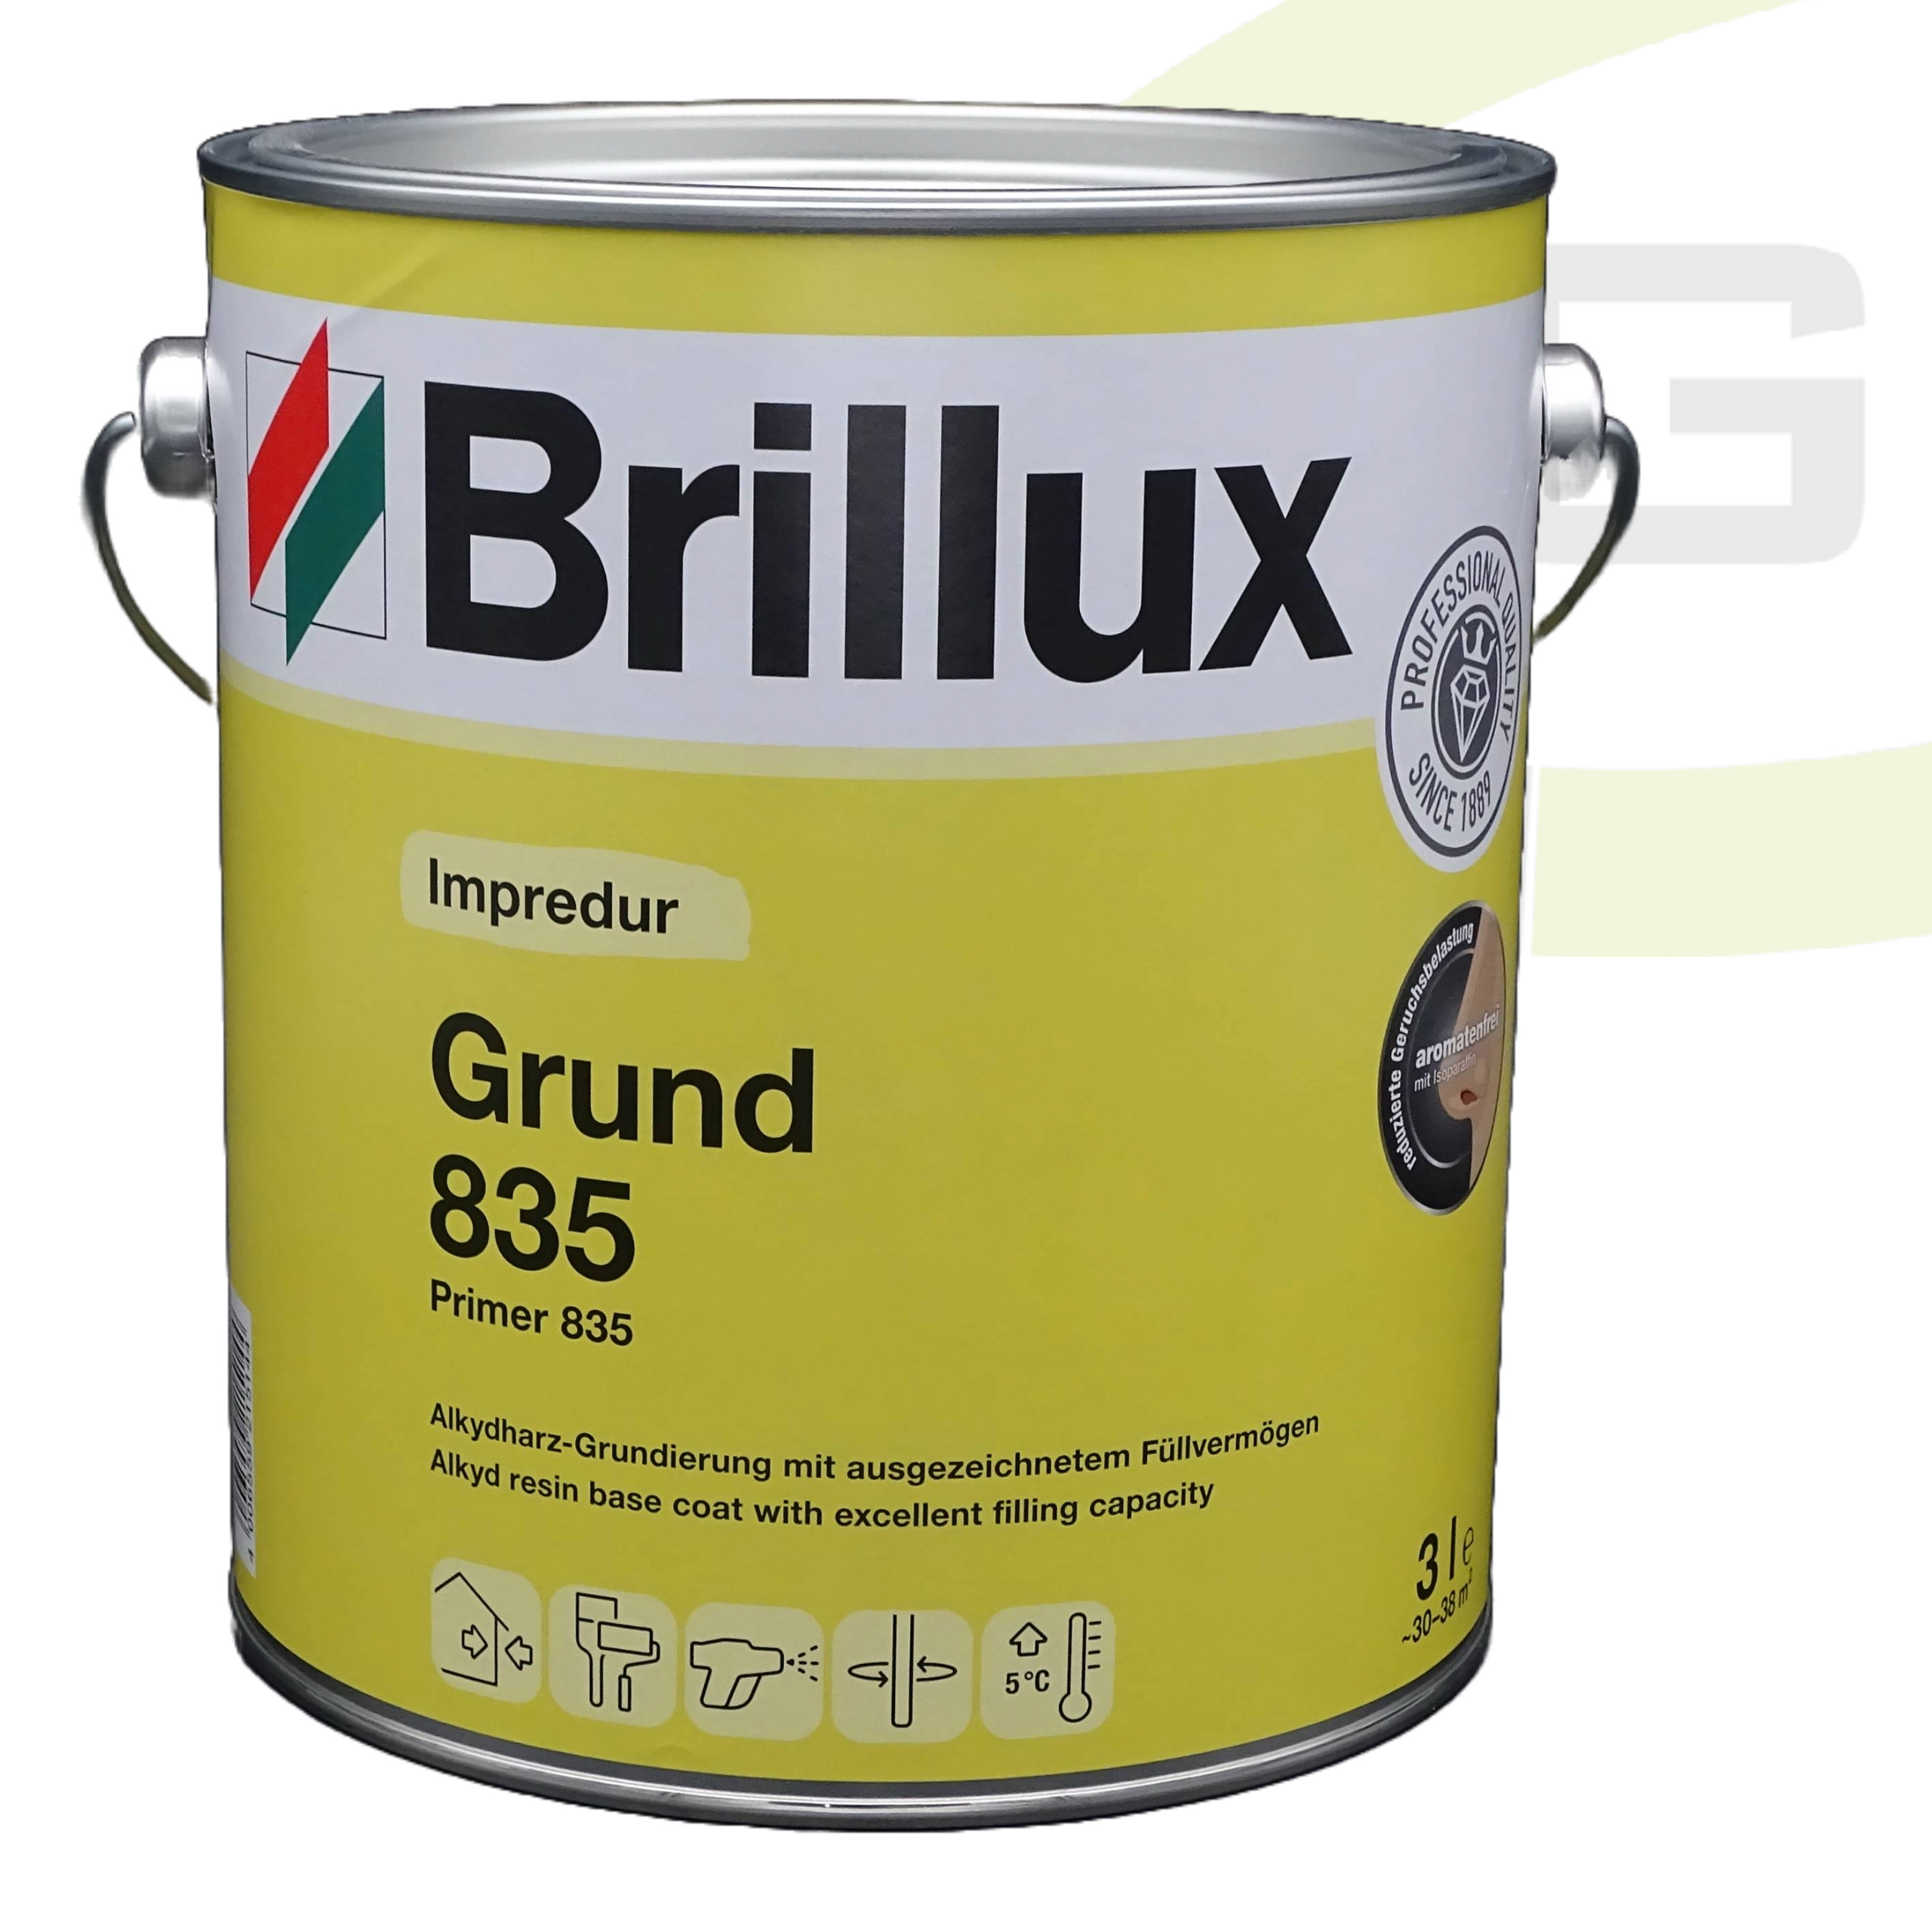 Brillux Impredur Grund 835 weiß - 3.00 LTR / Lösungsmittelhaltige Grundierung